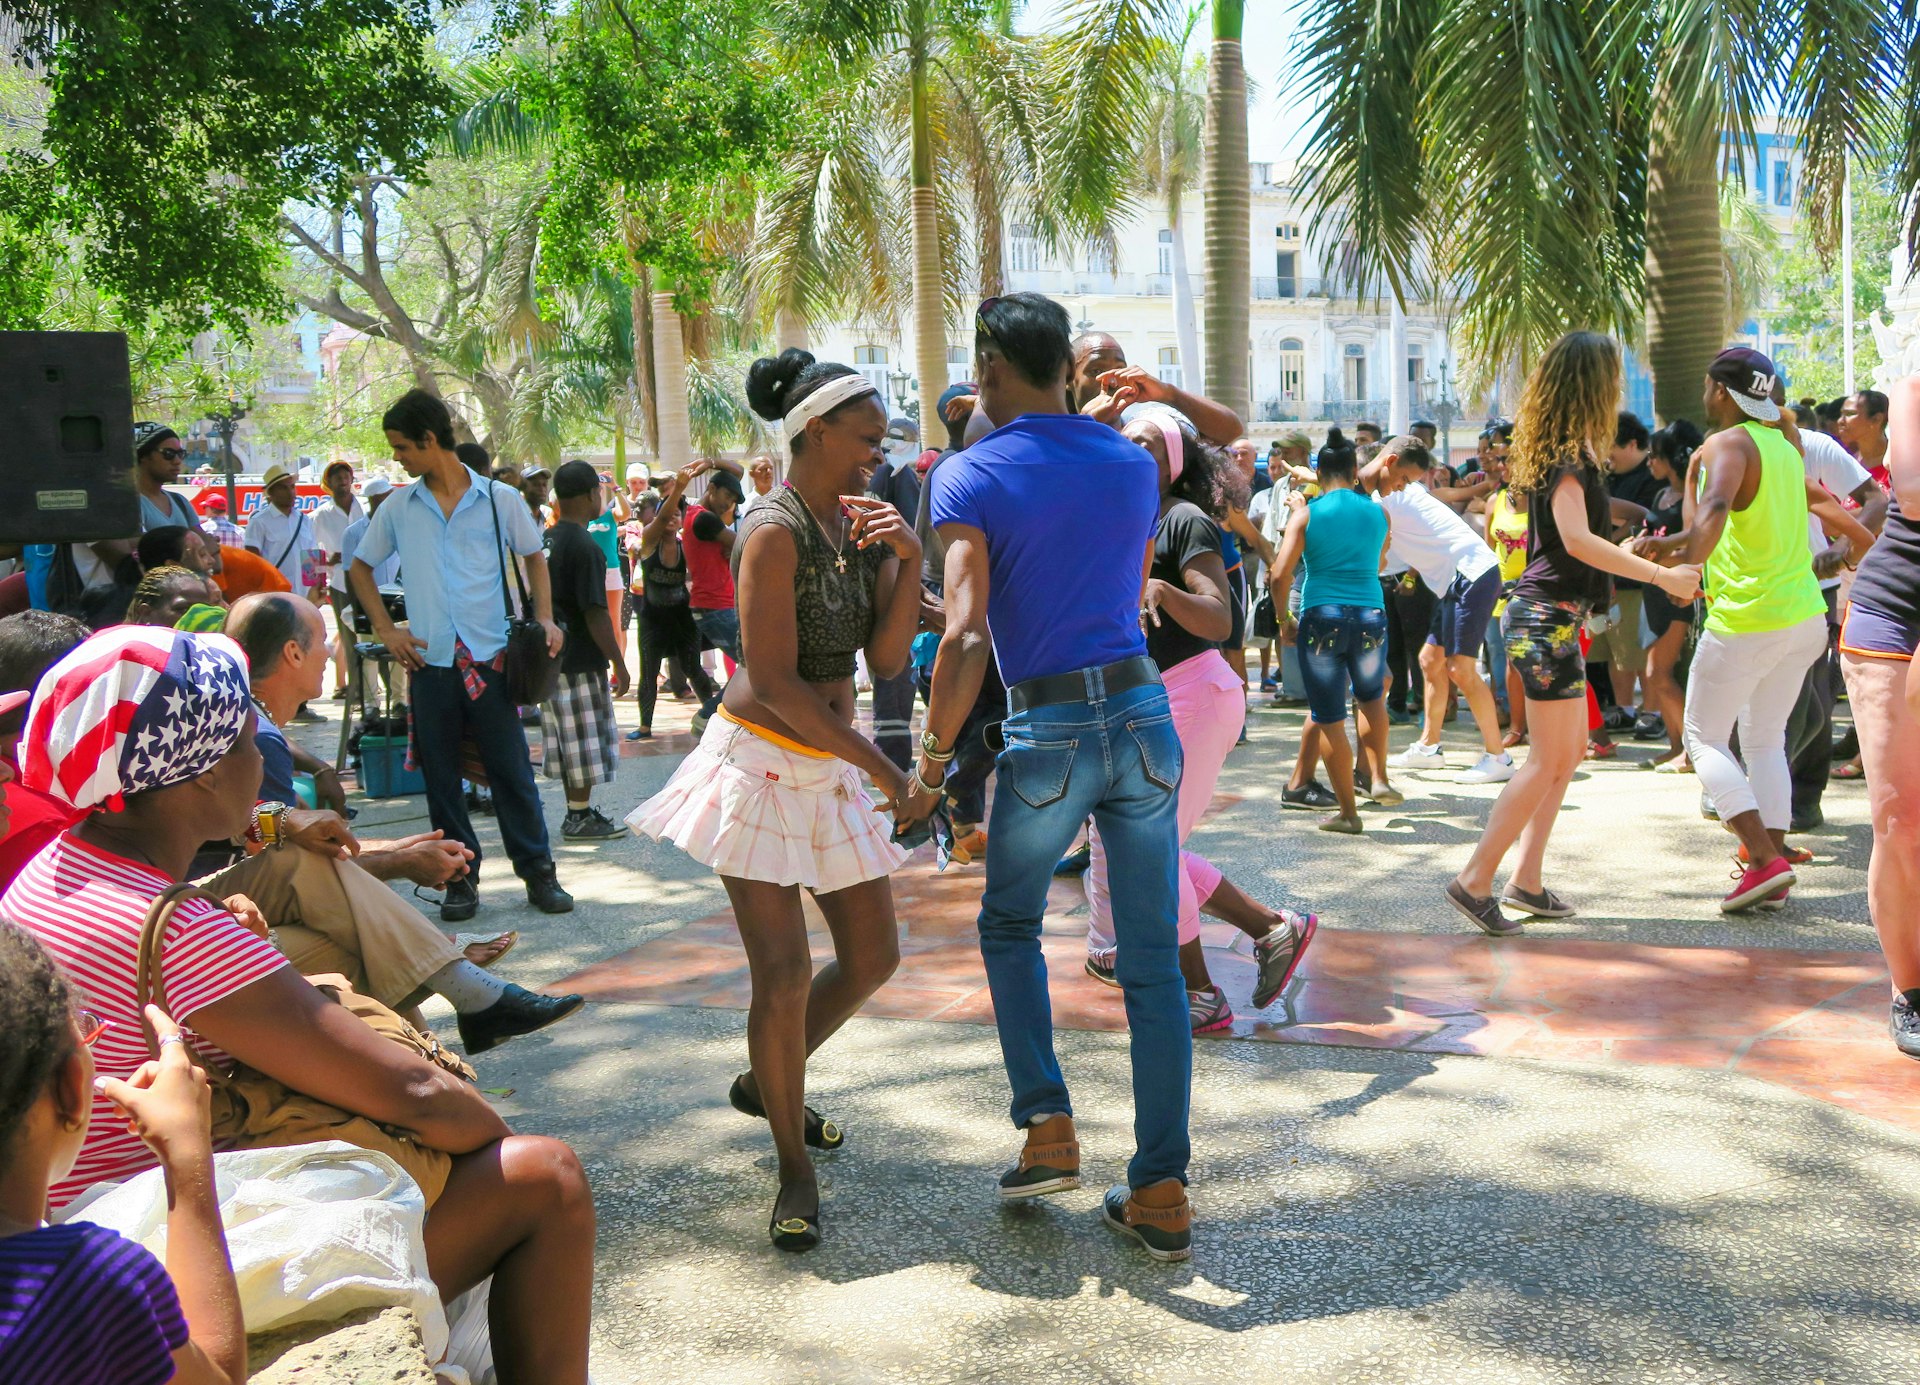 People dancing in a public square in Havana, Cuba 